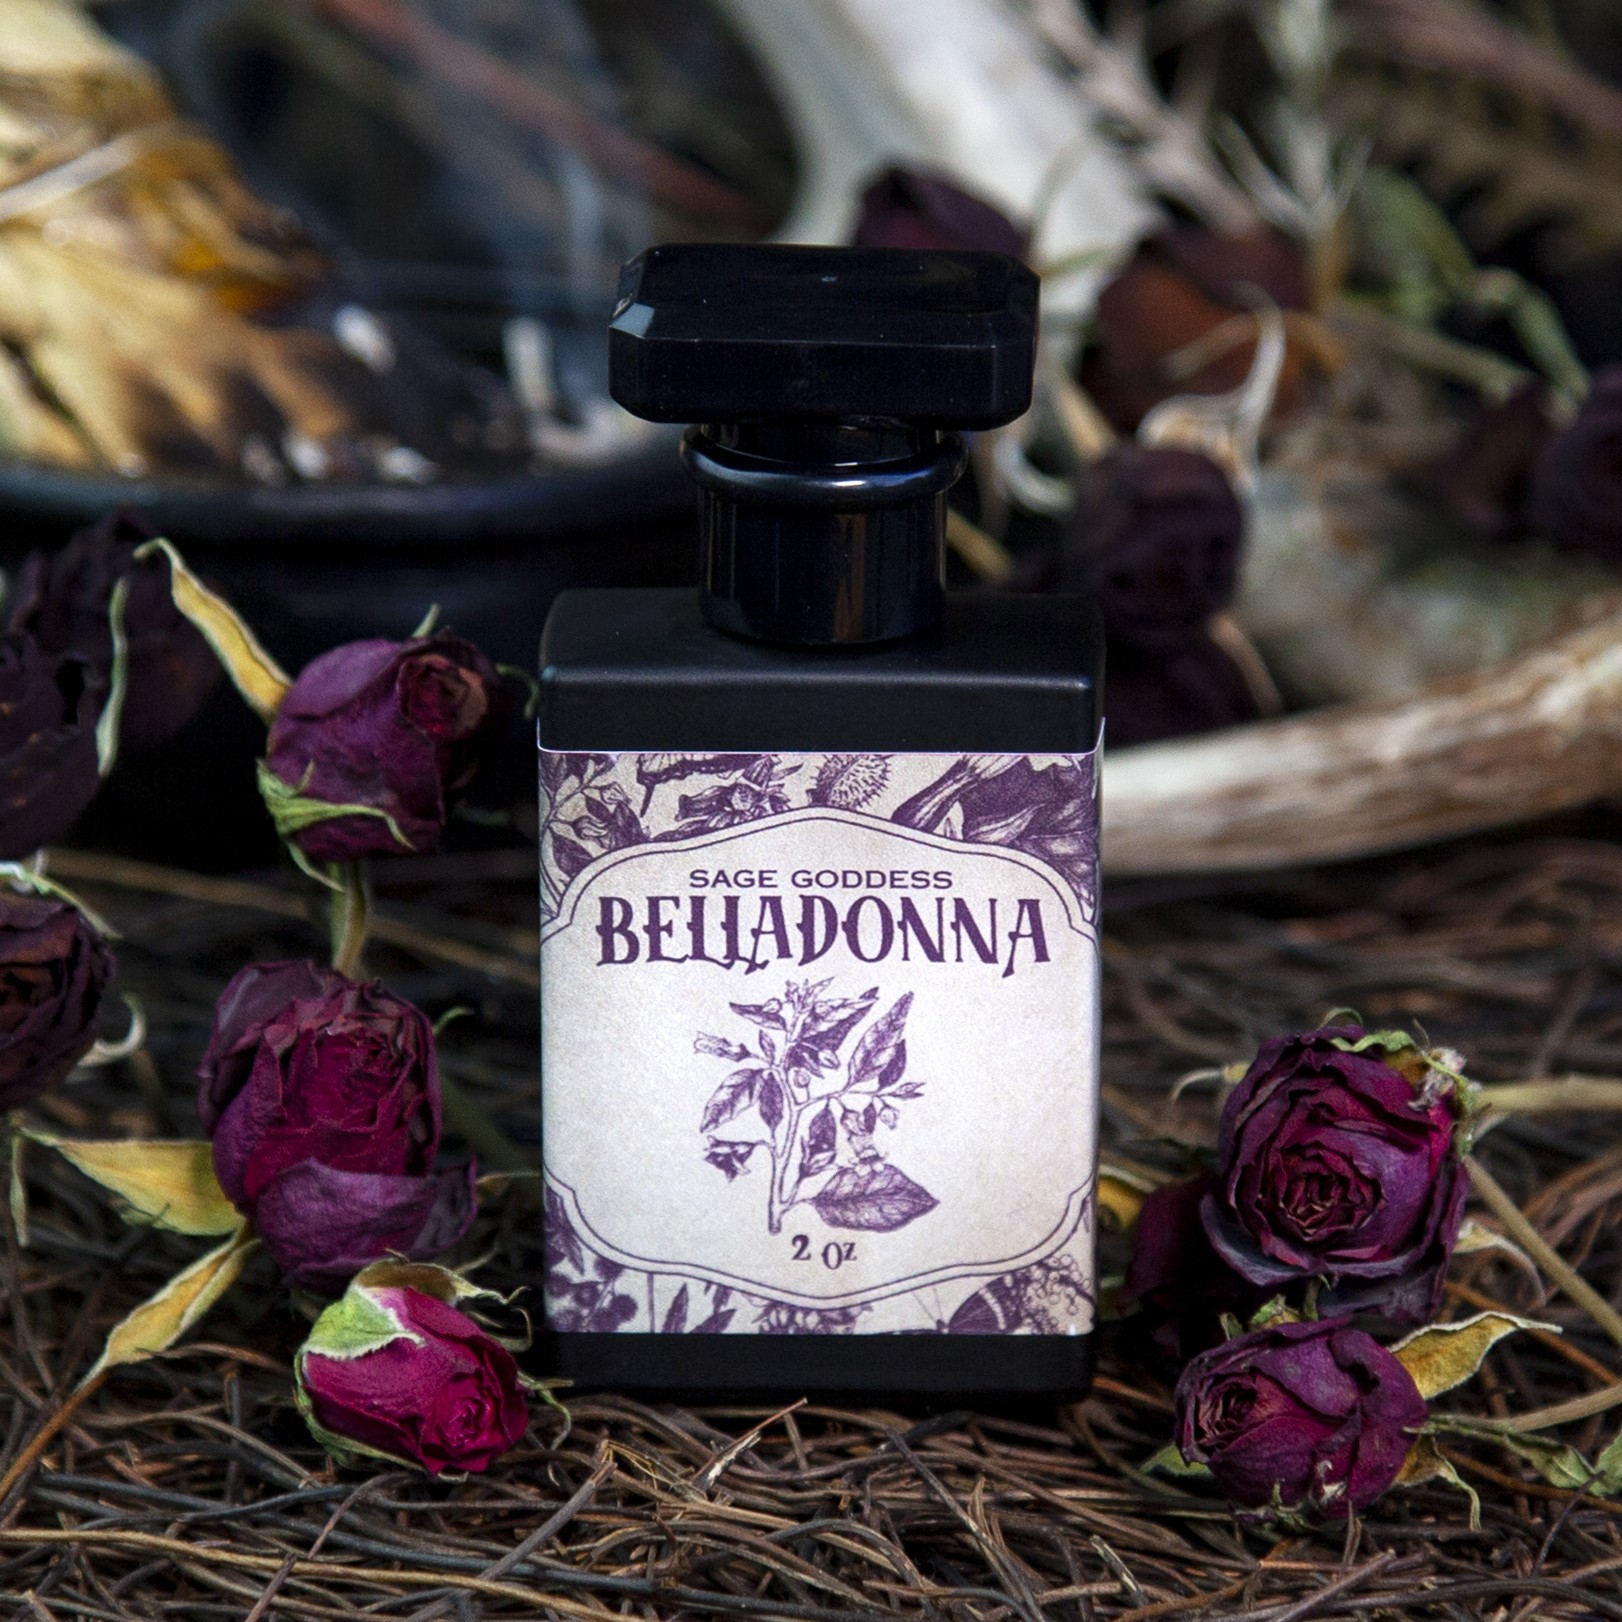 Sage Goddess Belladonna Perfume with Ylang Ylang & Neroli for